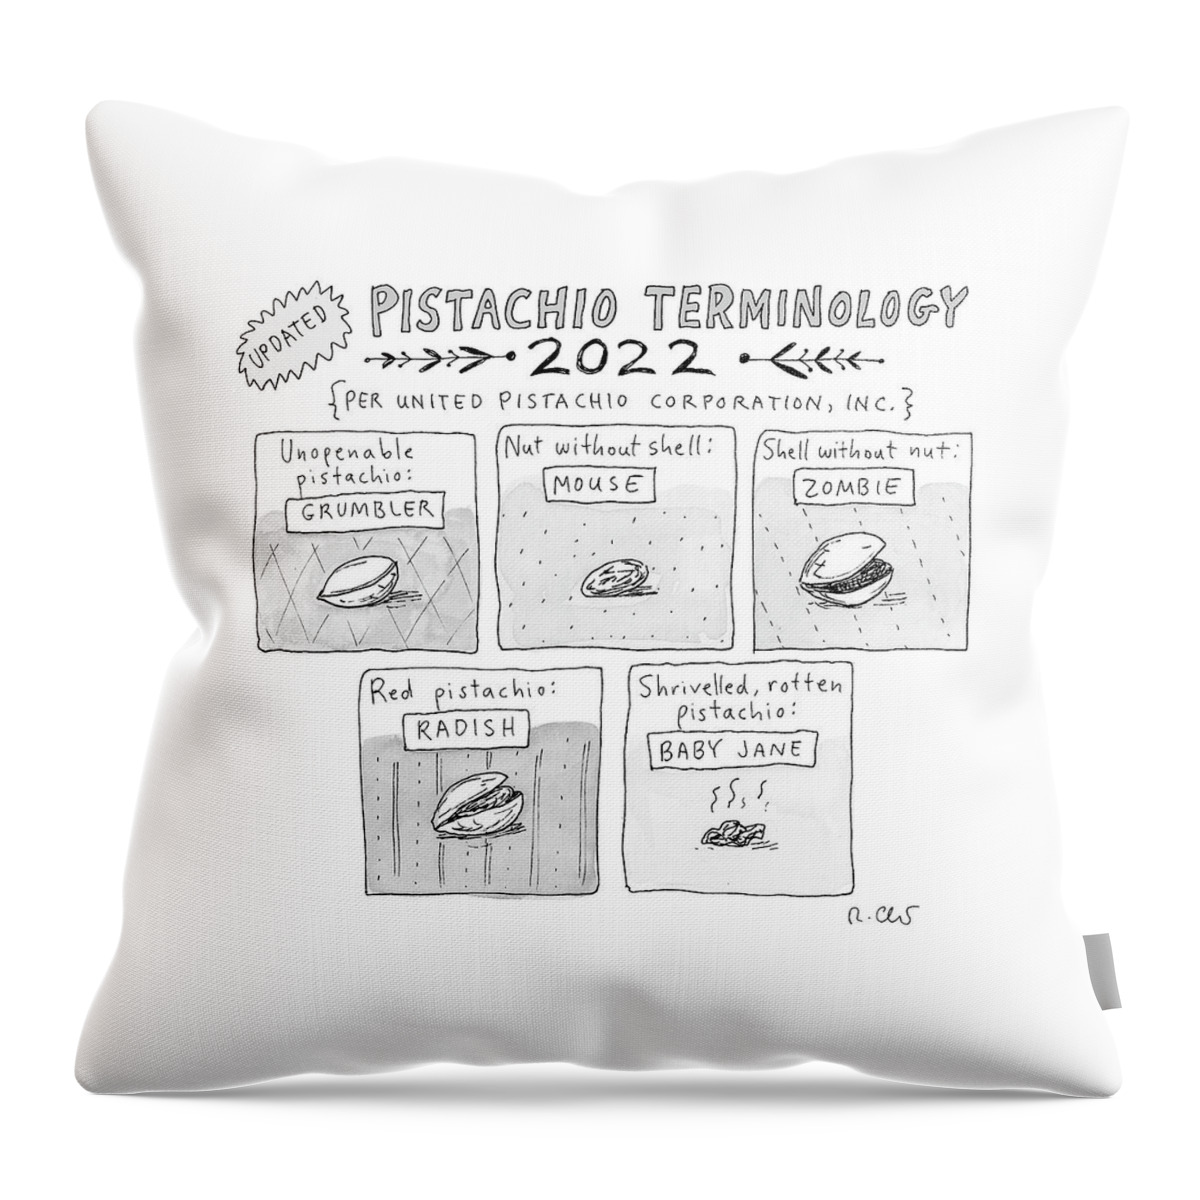 Pistachio Terminology Throw Pillow